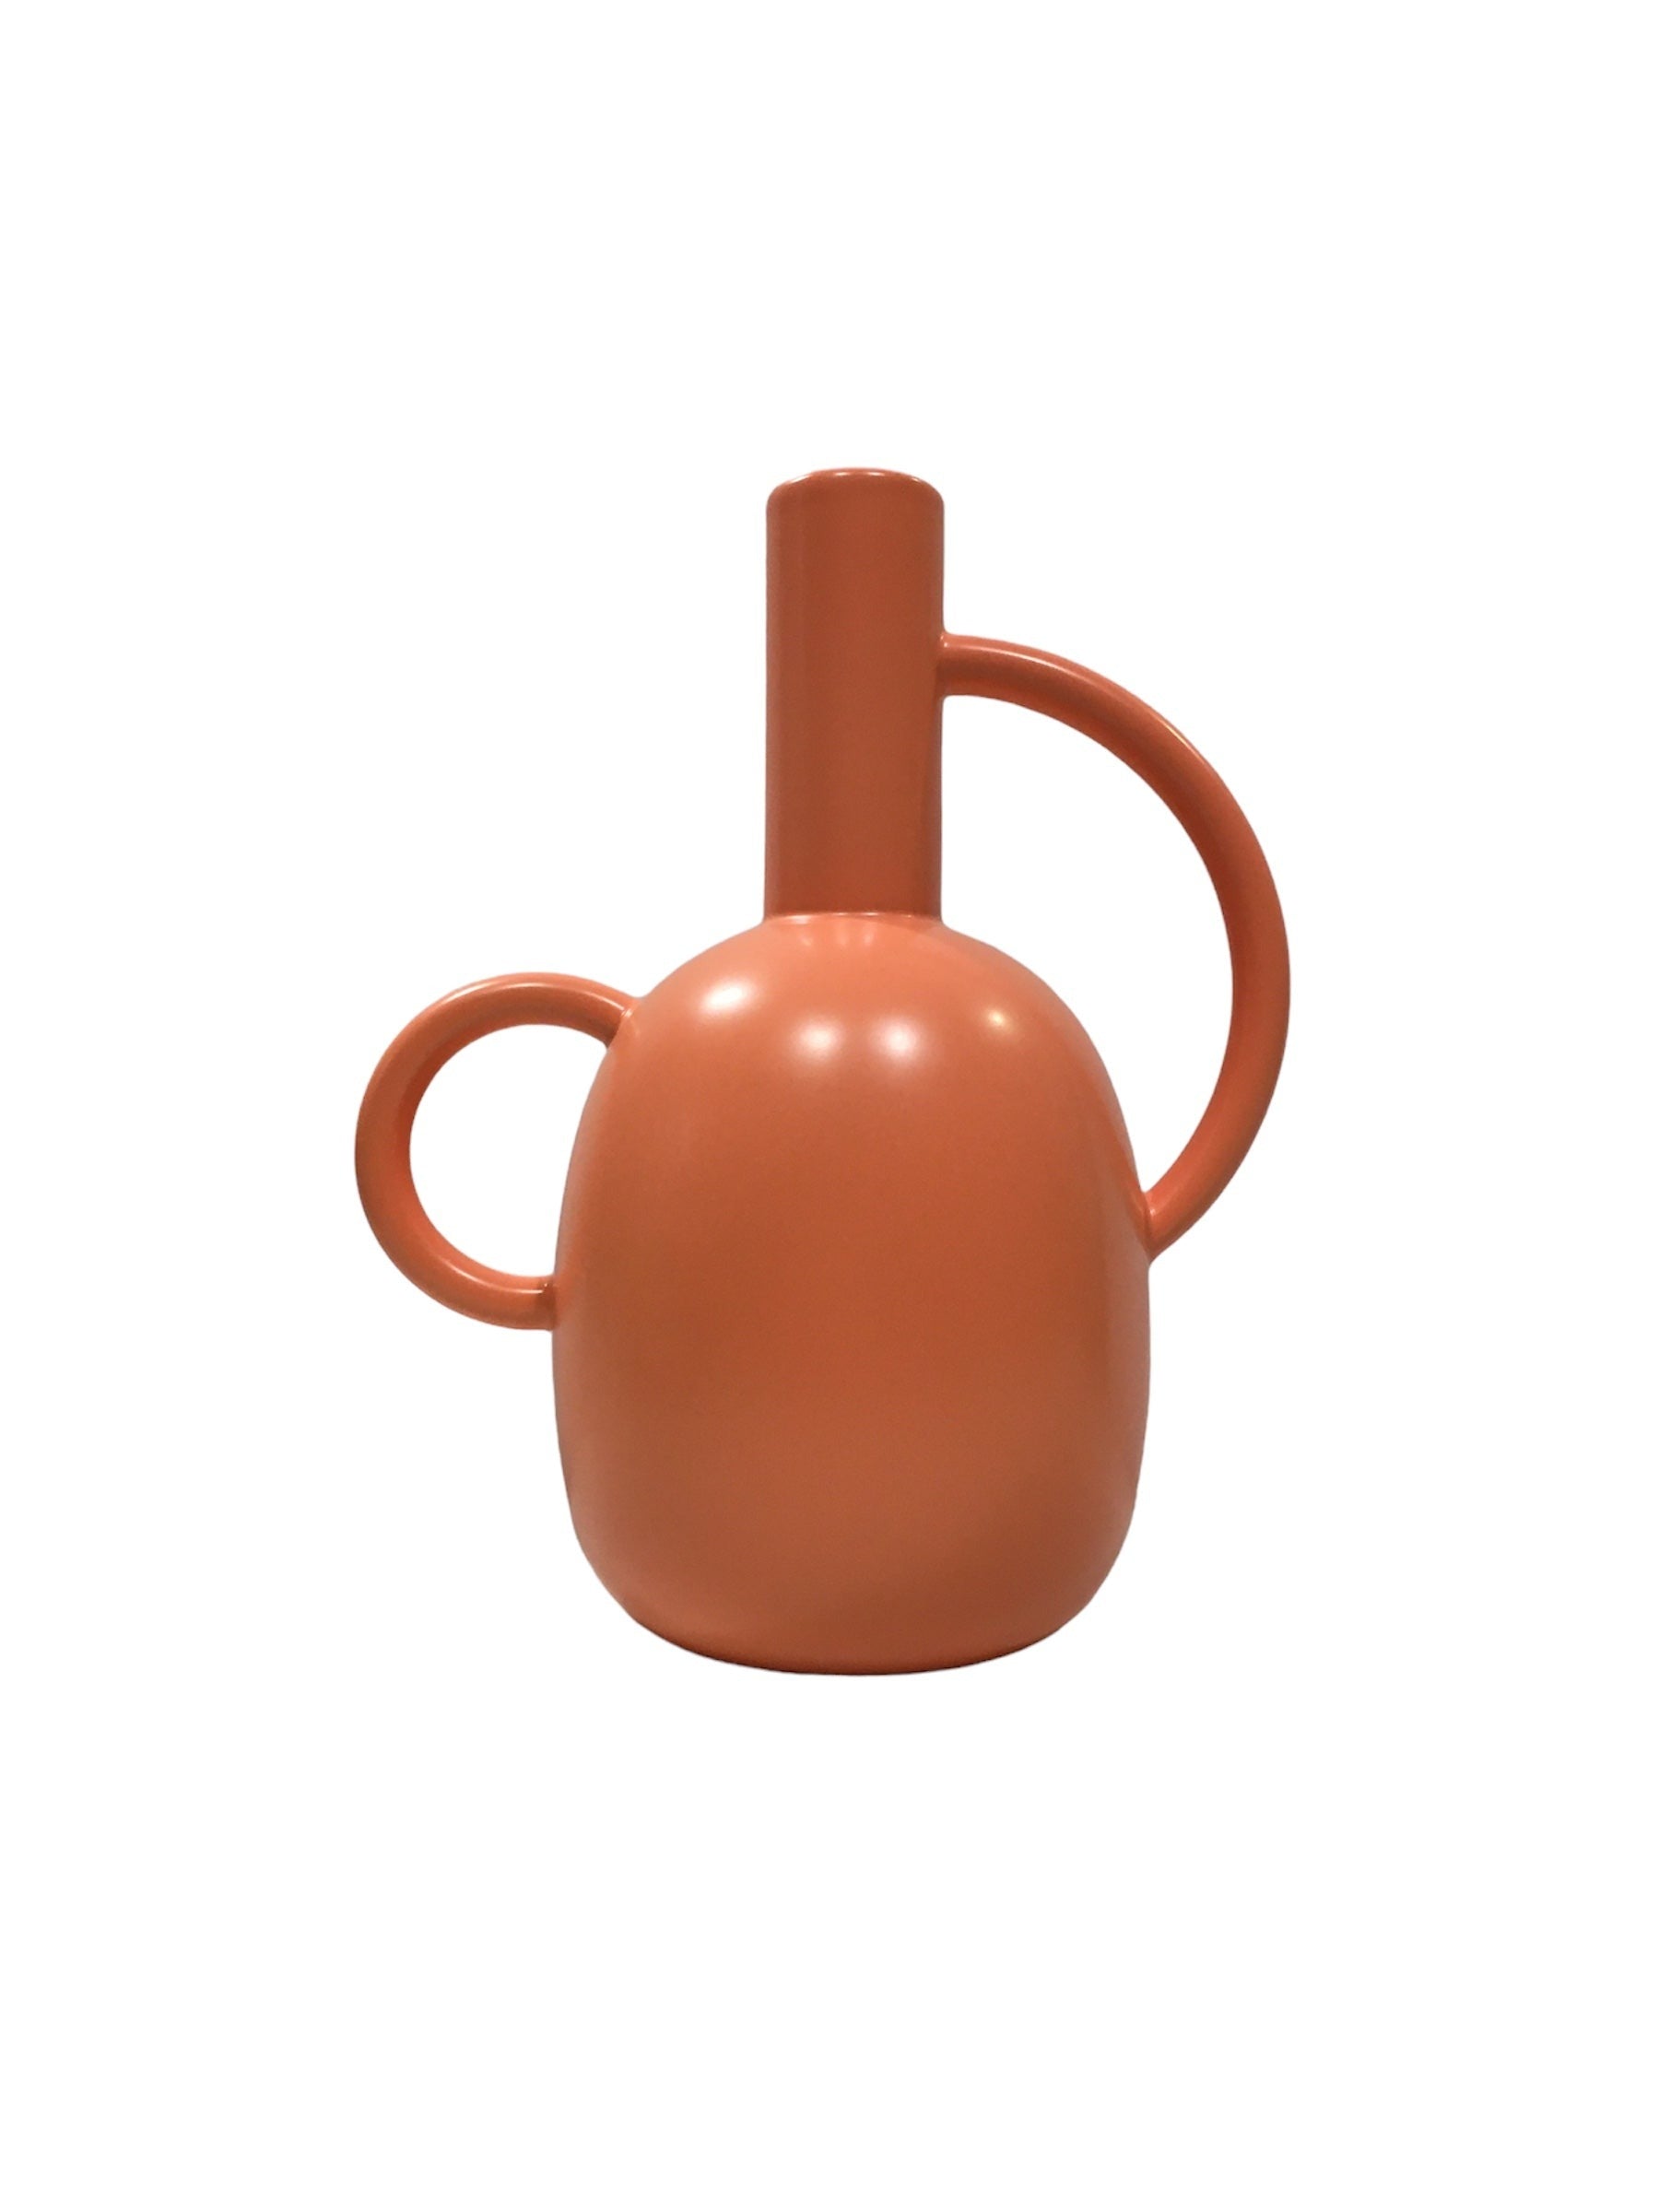 Vaso decorativo in ceramica di colore arancione. Collezione Pelike Dimensioni: cm 23 x 17 x h 28. In negozio e online su tuttochic.it